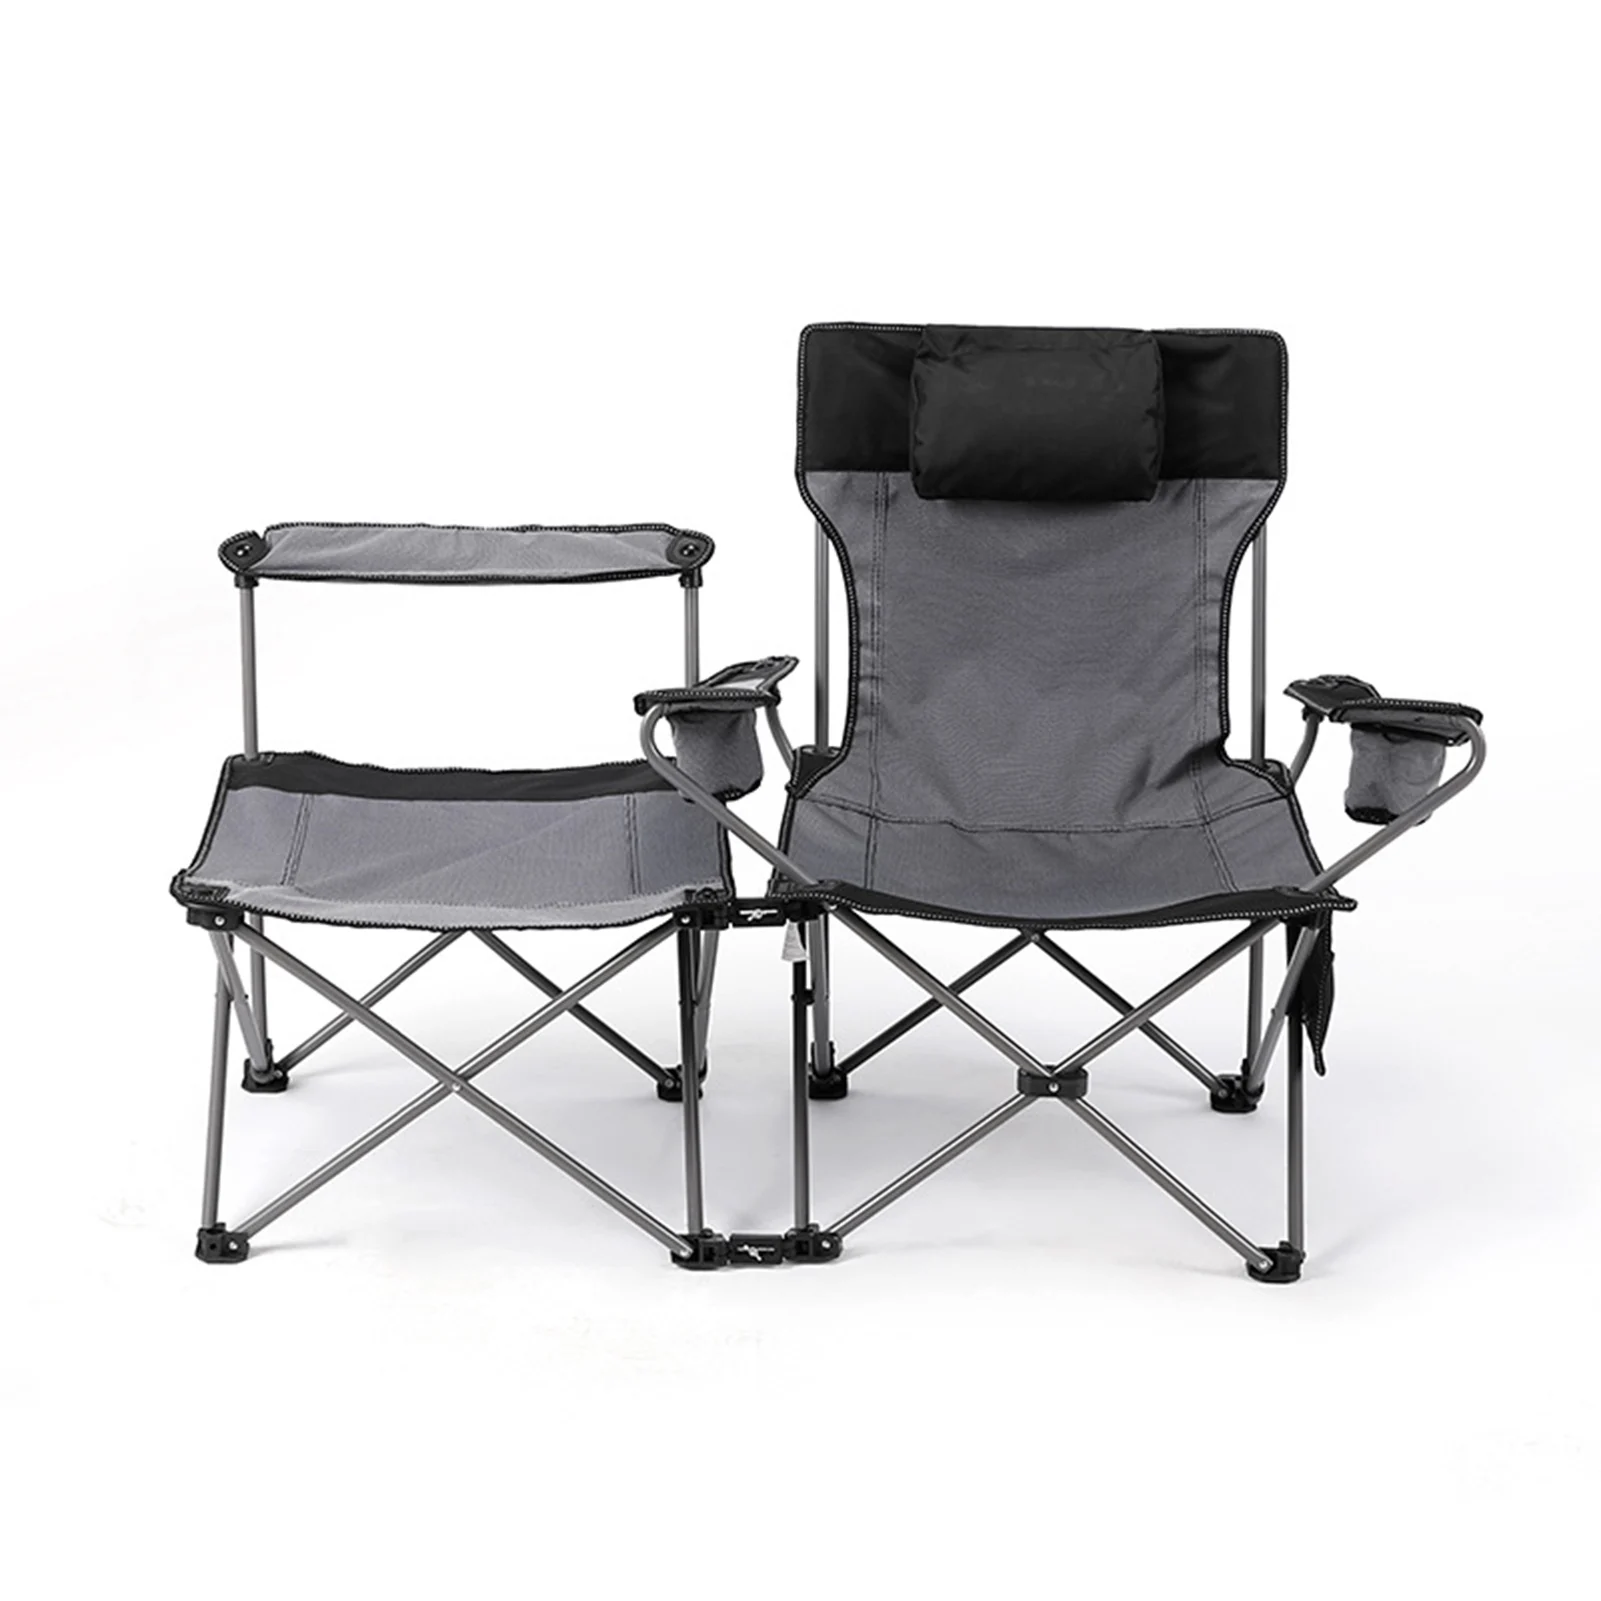 저렴한 2 인 1 더블 접이식 휴대용 캠핑 의자, 해변 테라스 피크닉 뒤뜰 수영장 공원용 여행 가방 포함